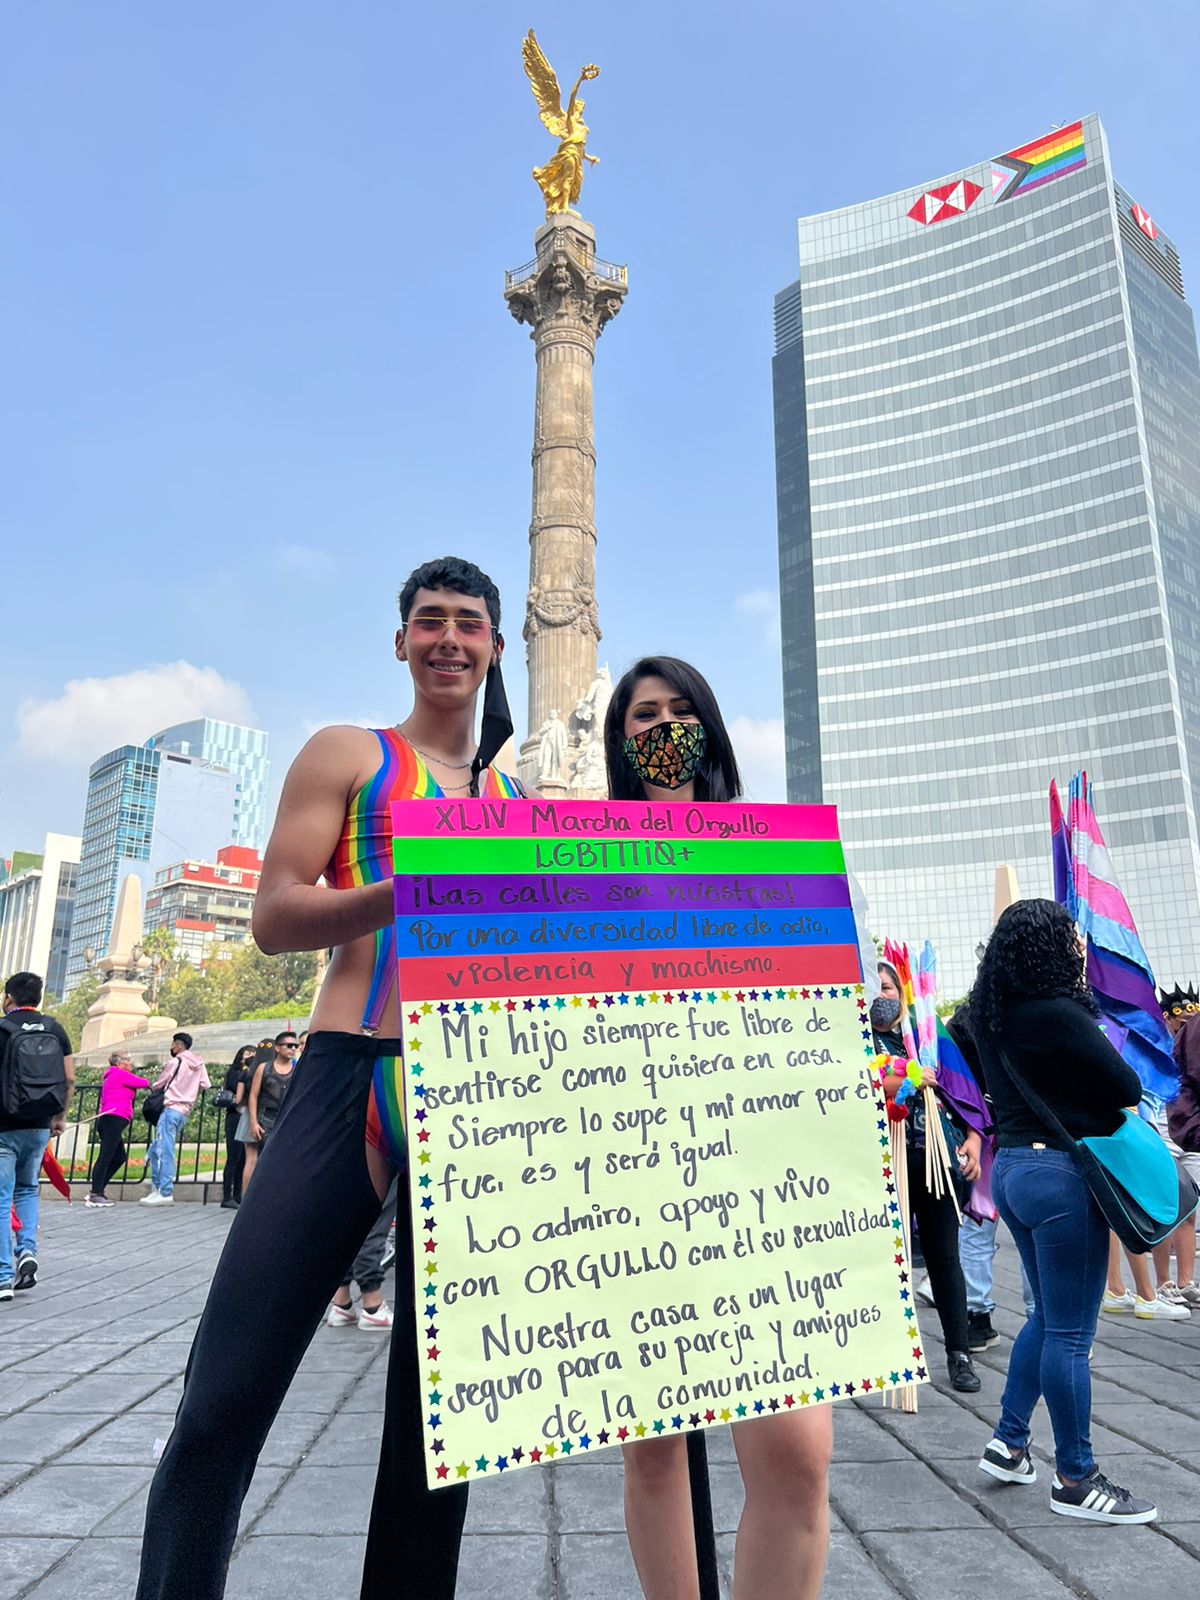 Una madre y un hijo marchando juntos este sábado, y sostienen una pancarta sobre el apoyo que le brinda (Crédito: Pavel Gaona)